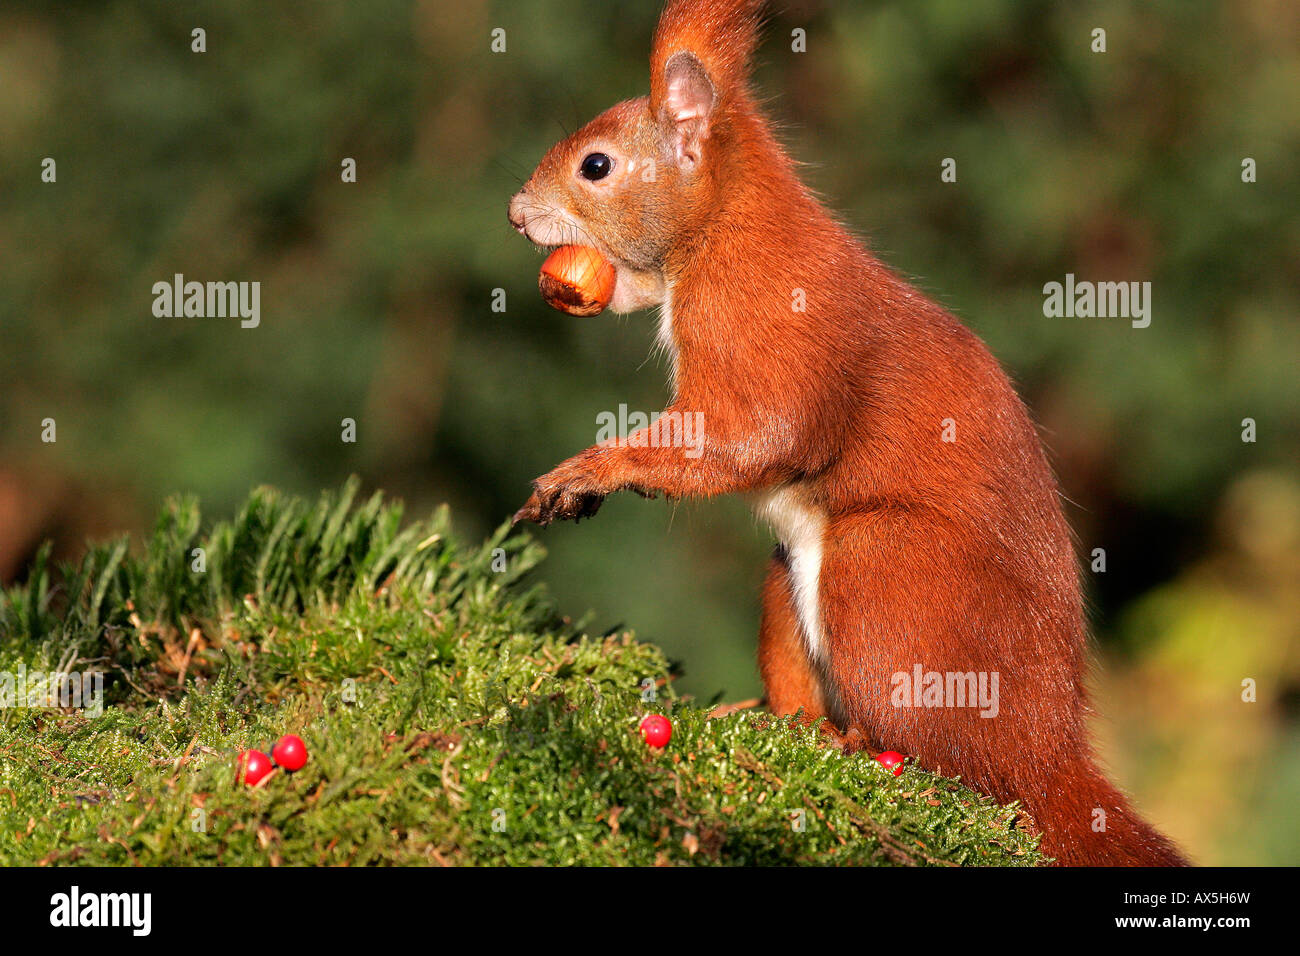 Unione scoiattolo rosso con nocciola nella bocca ( Sciurus vulgaris) Foto Stock